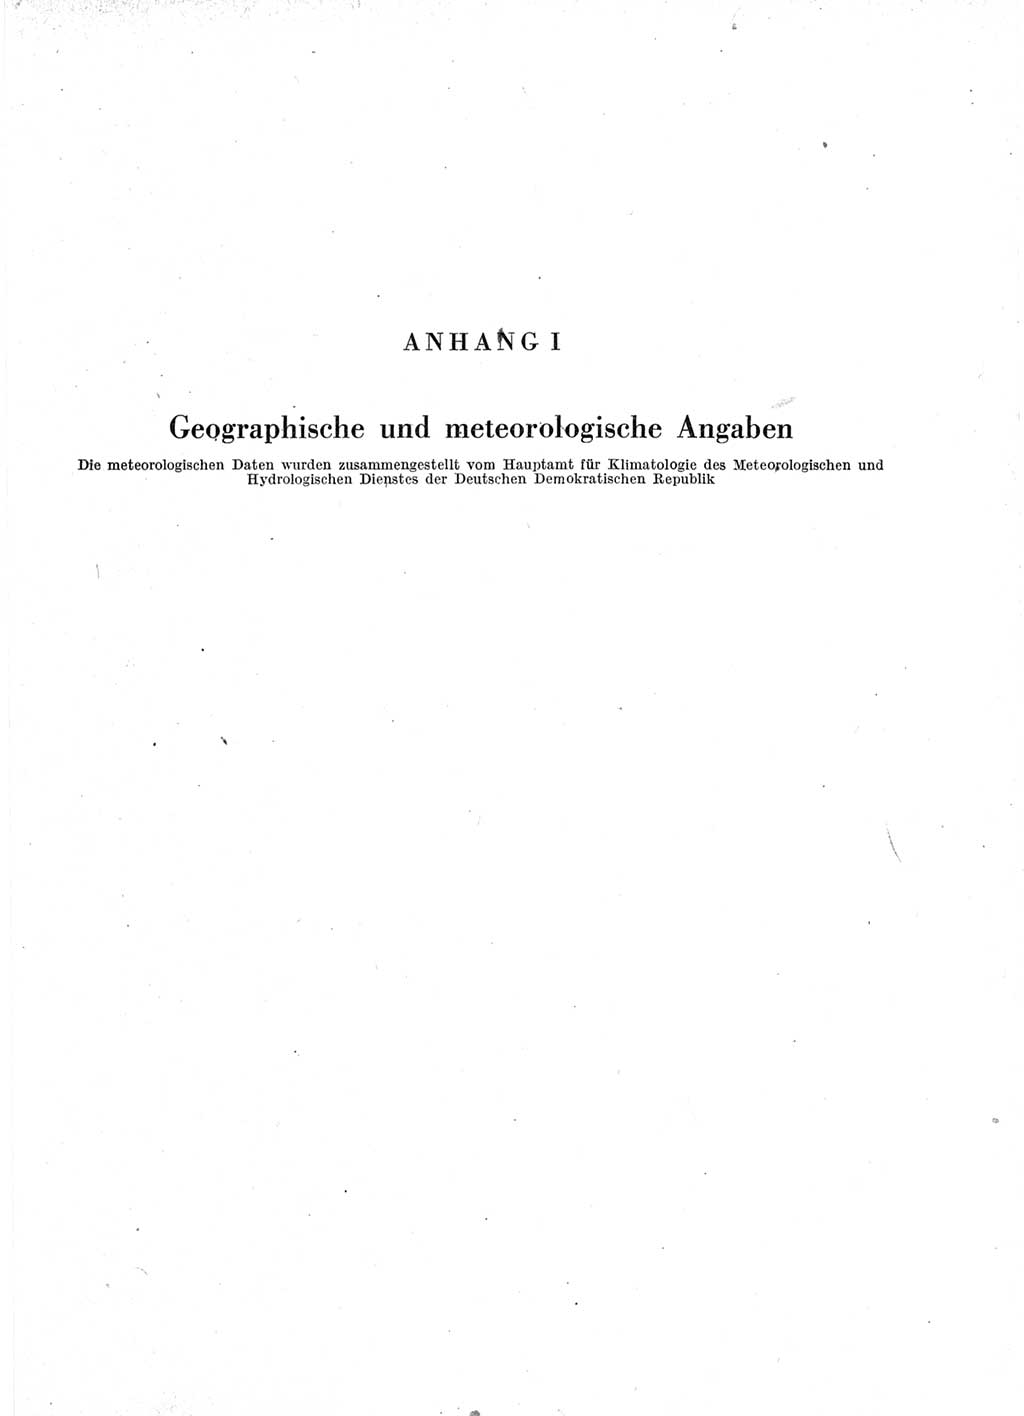 Statistisches Jahrbuch der Deutschen Demokratischen Republik (DDR) 1963, Seite 545 (Stat. Jb. DDR 1963, S. 545)